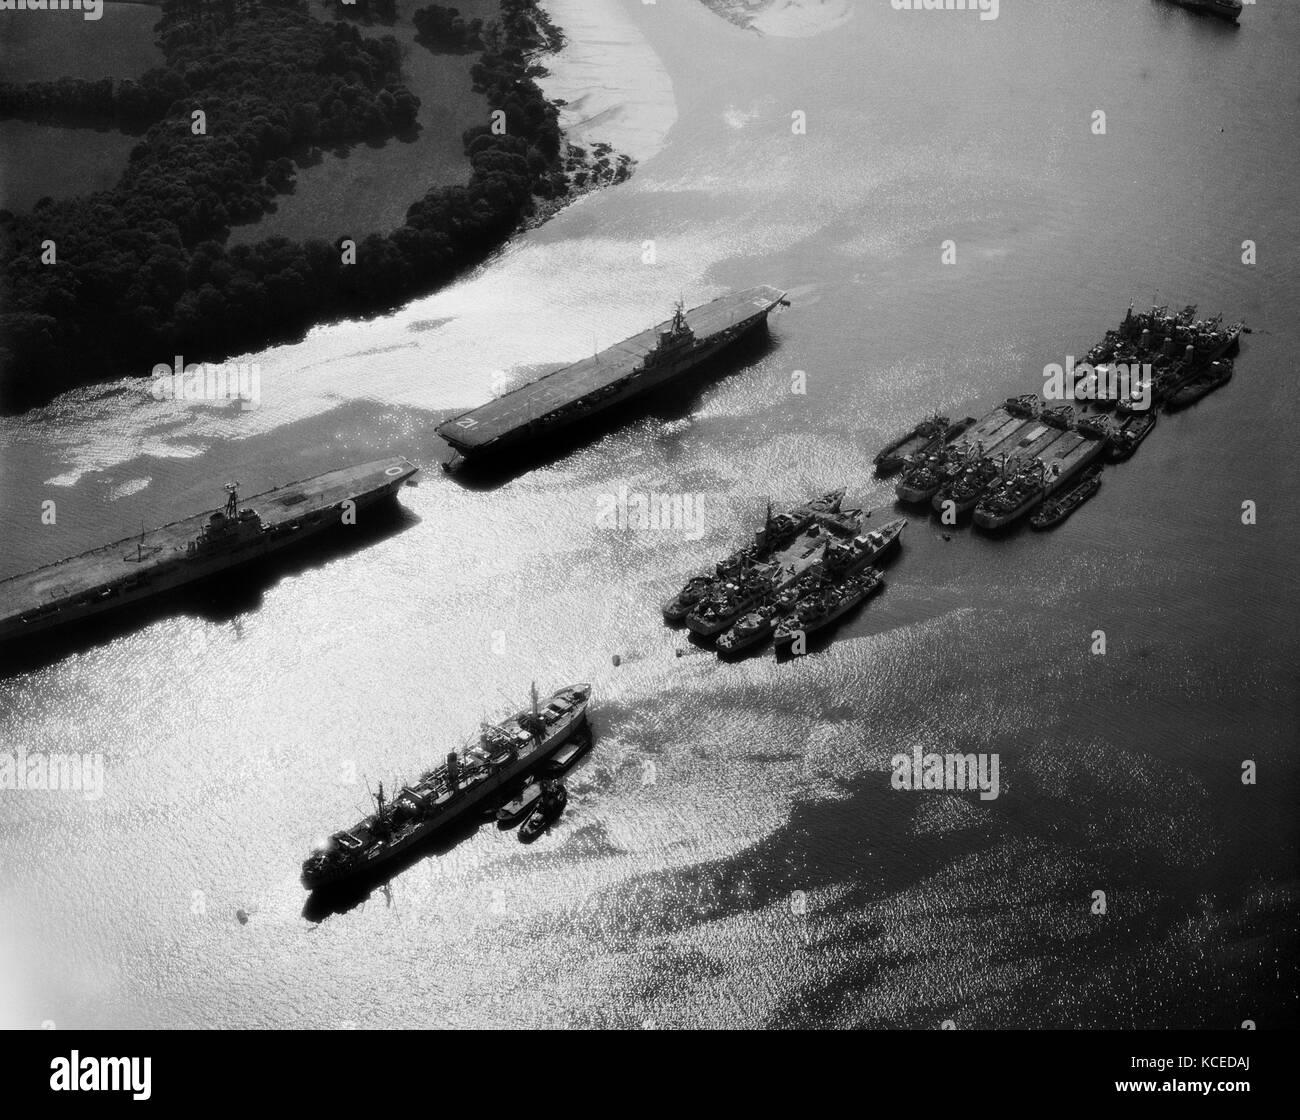 River Tamar, Plymouth, Devon. Royal Navy Flugzeugträger und andere militärische Schiffe auf dem Fluss Tamar. von Harold wingham im Juli 1959 fotografiert. Stockfoto